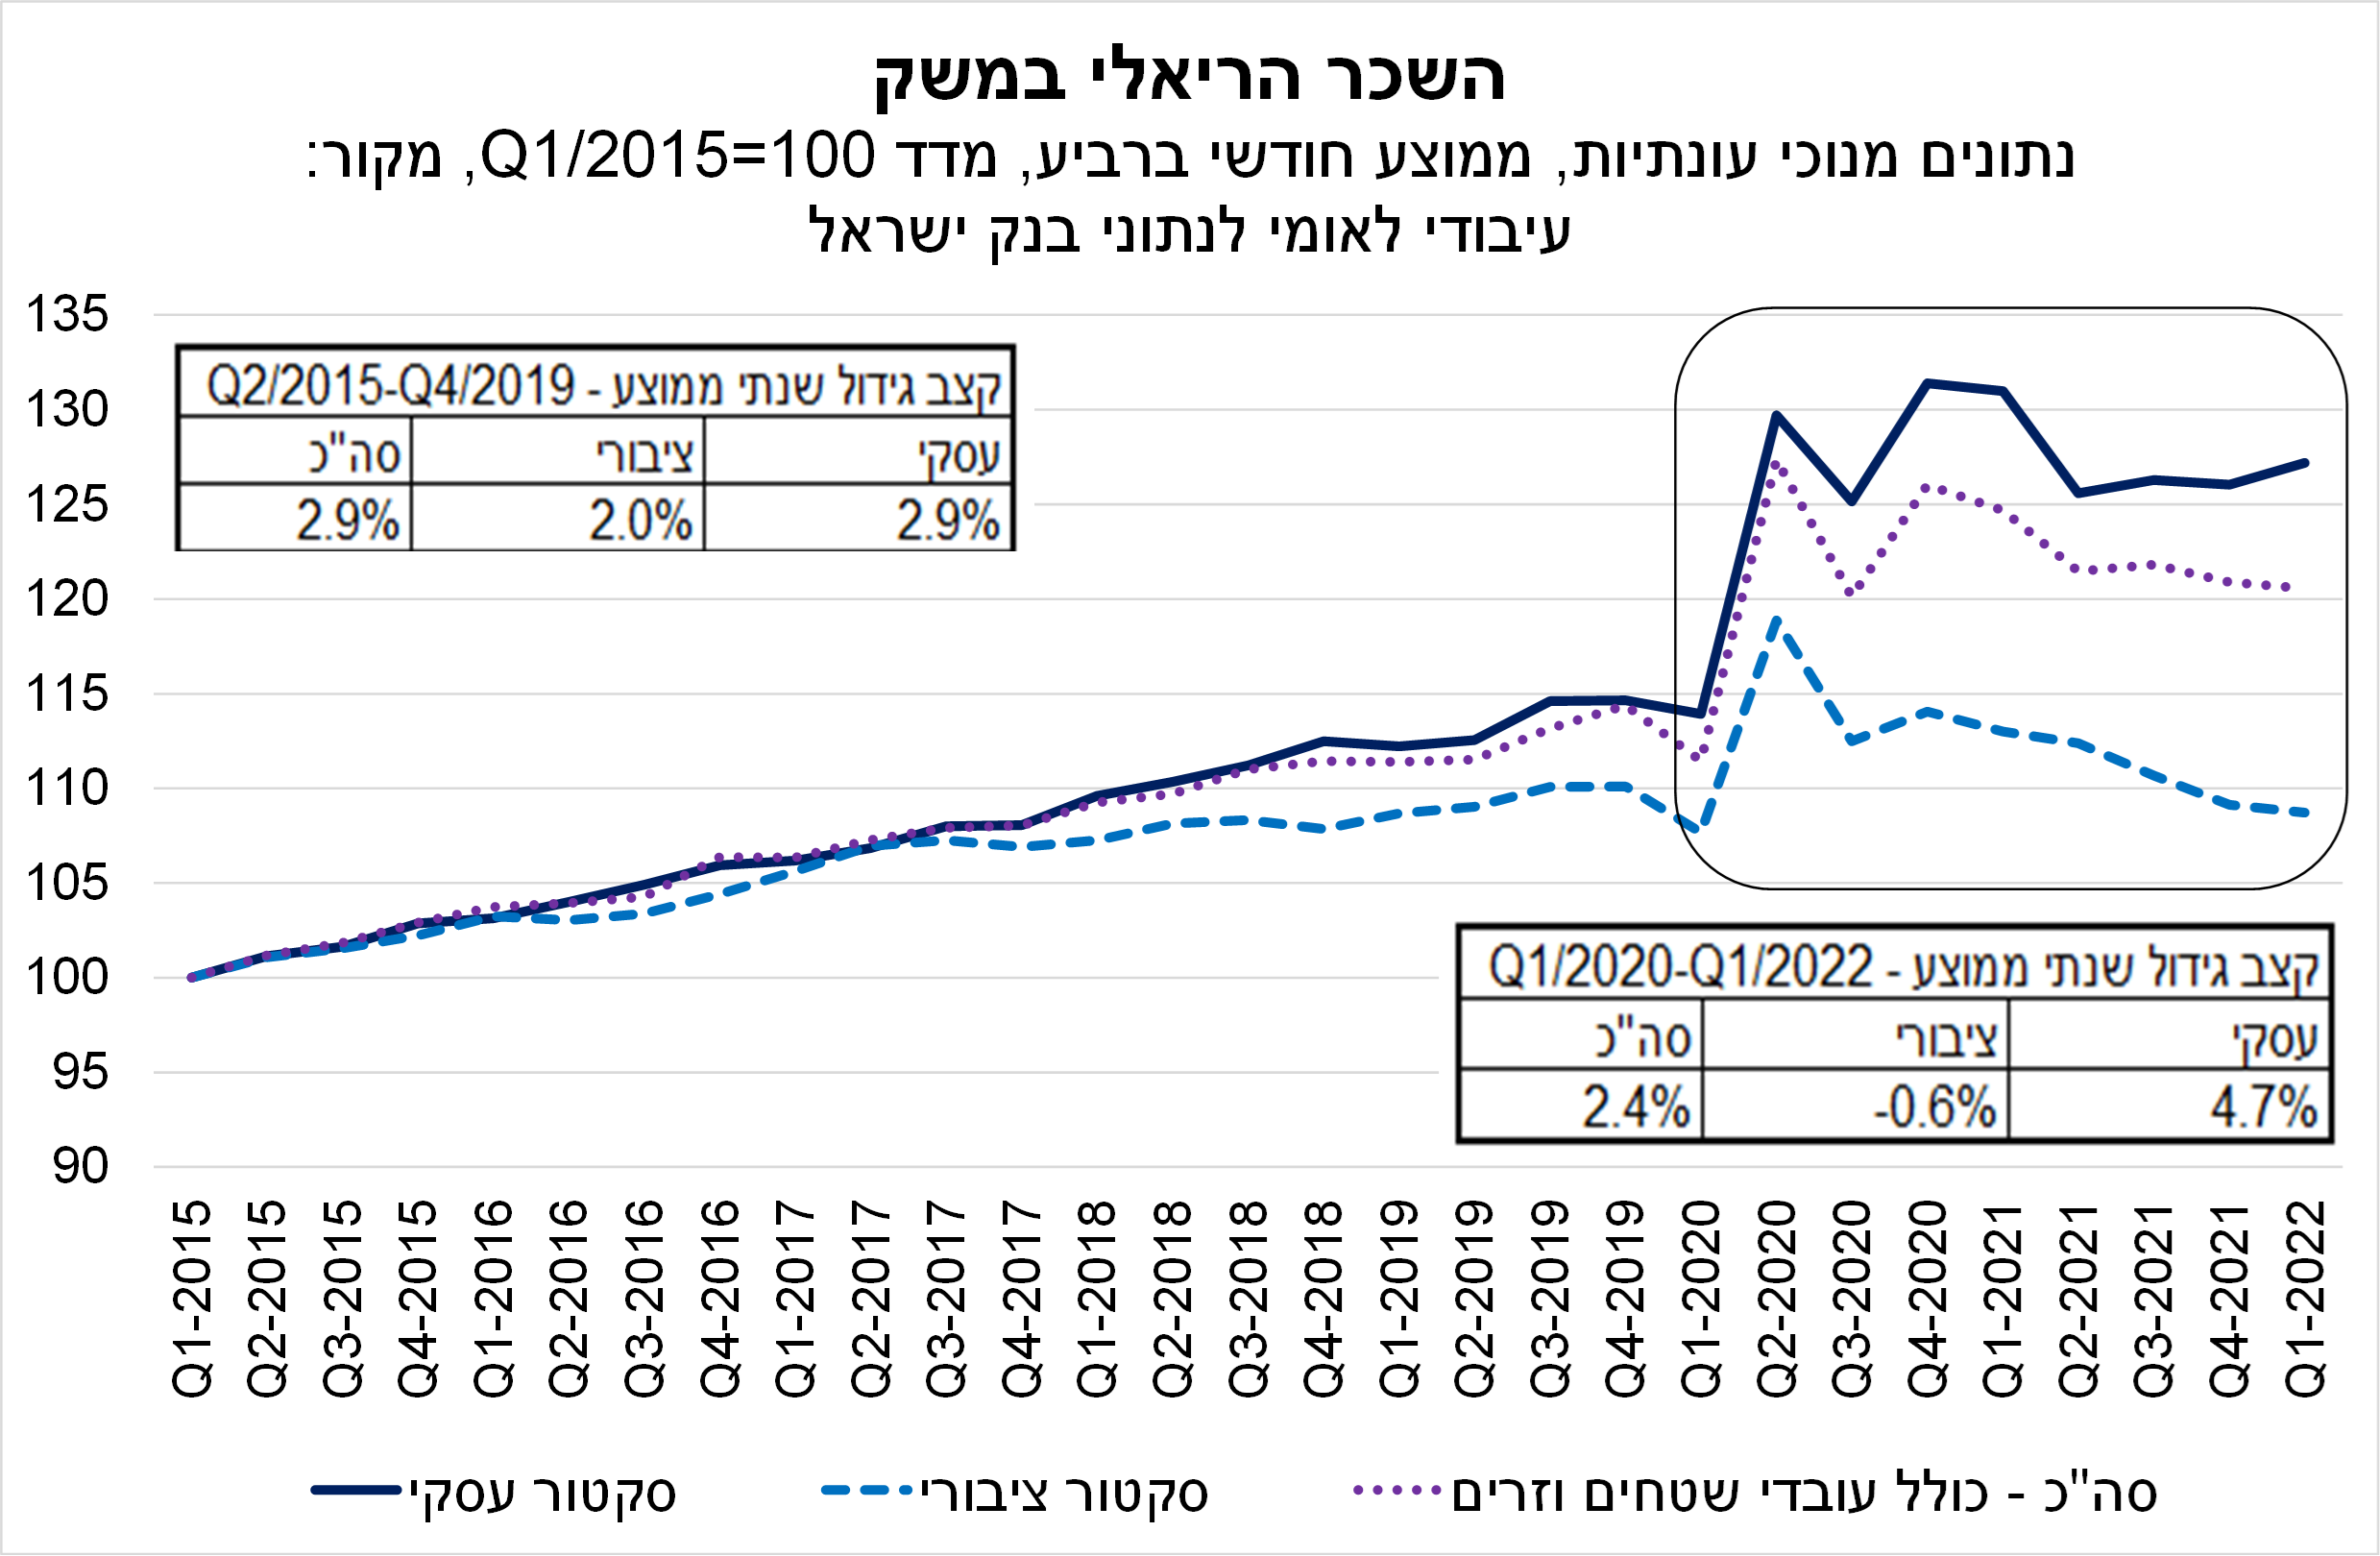  השכר הריאלי במשק הישראלי